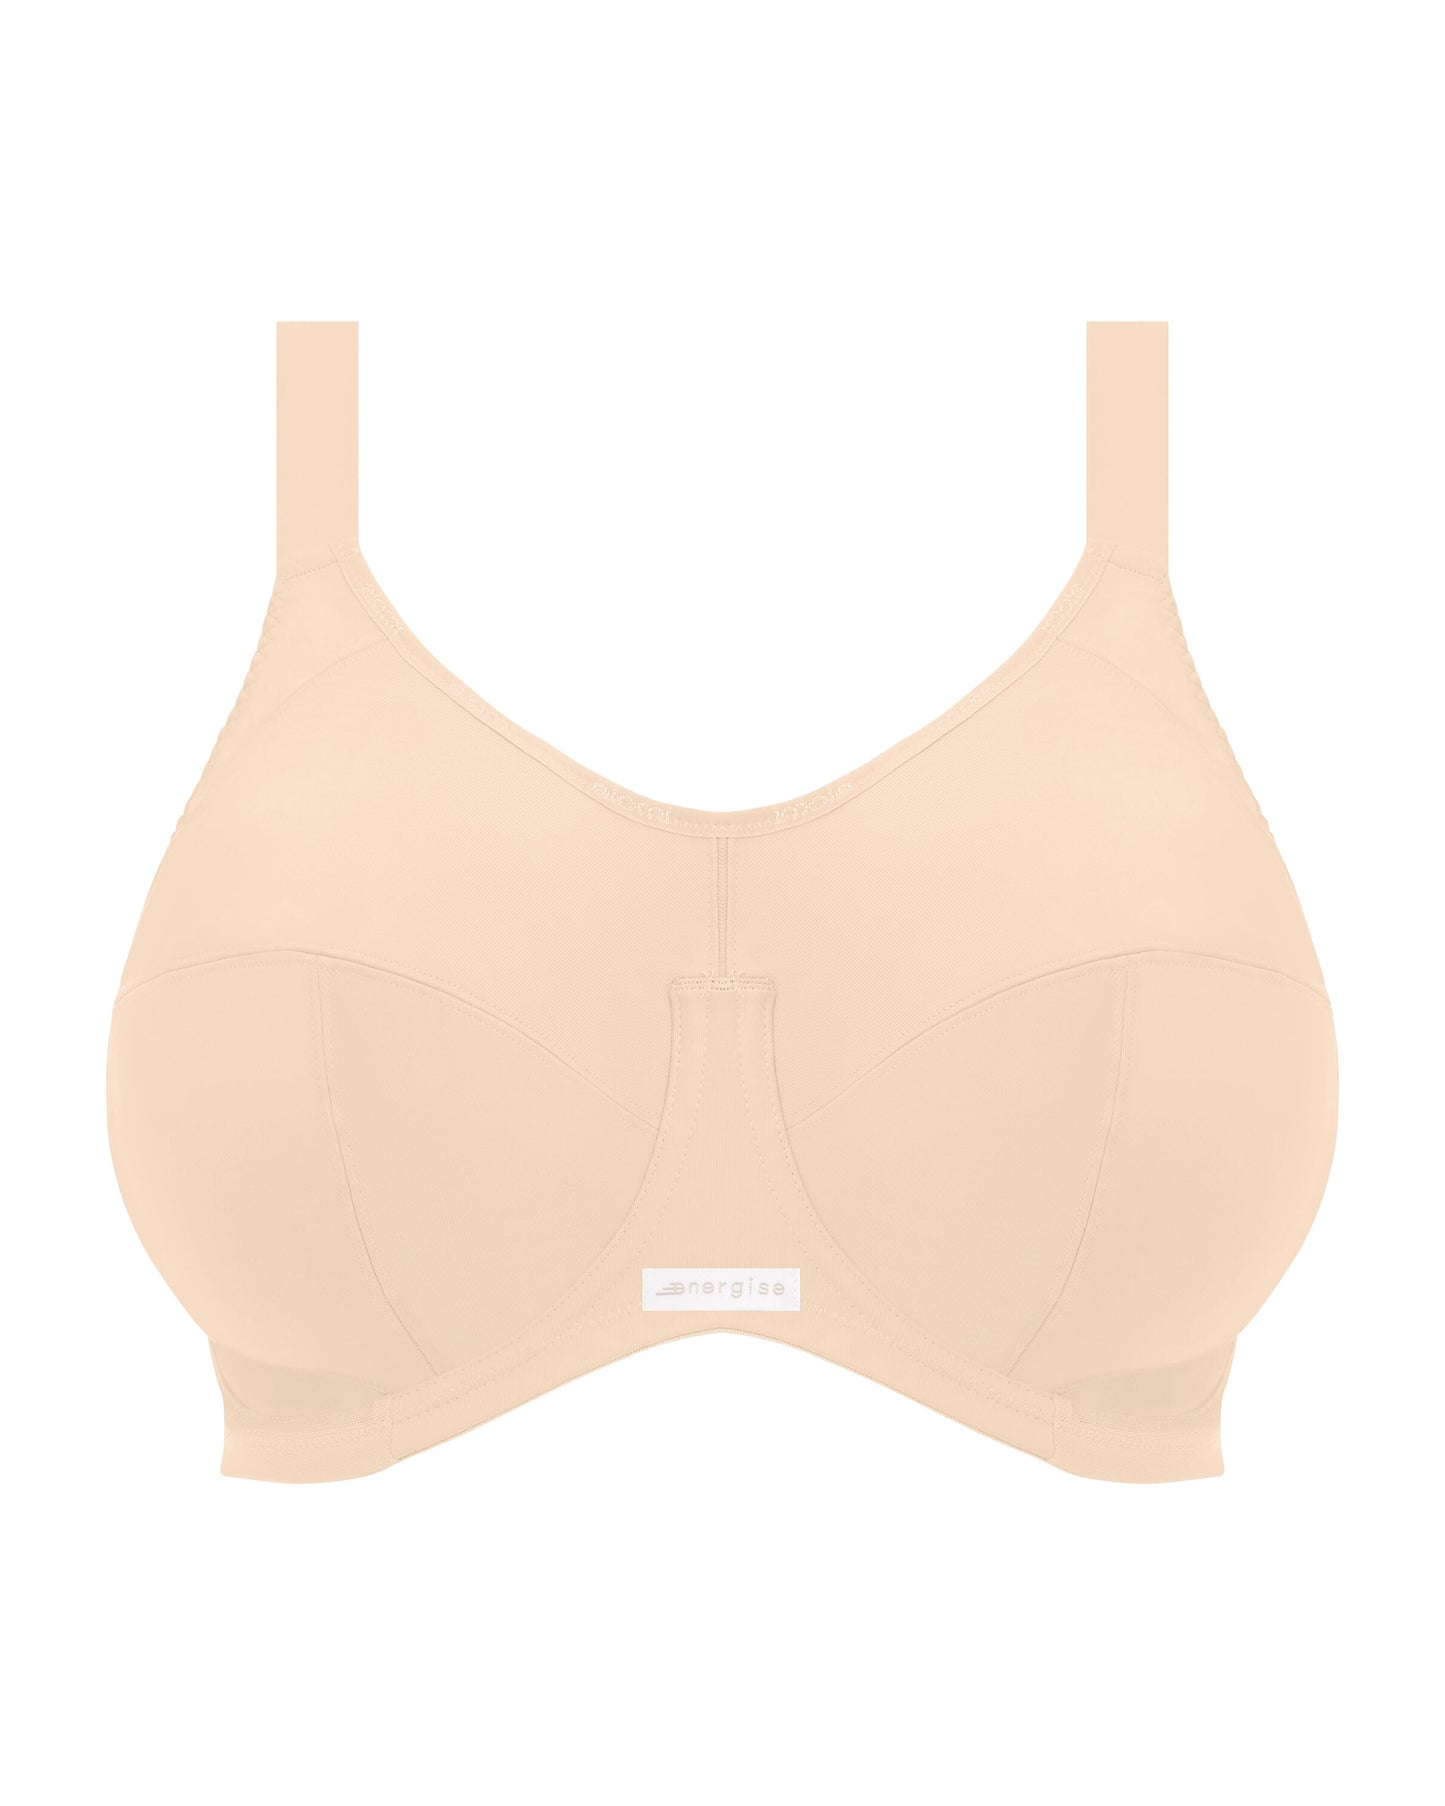 Flat lay of an underwire sports bra in nude/ beige